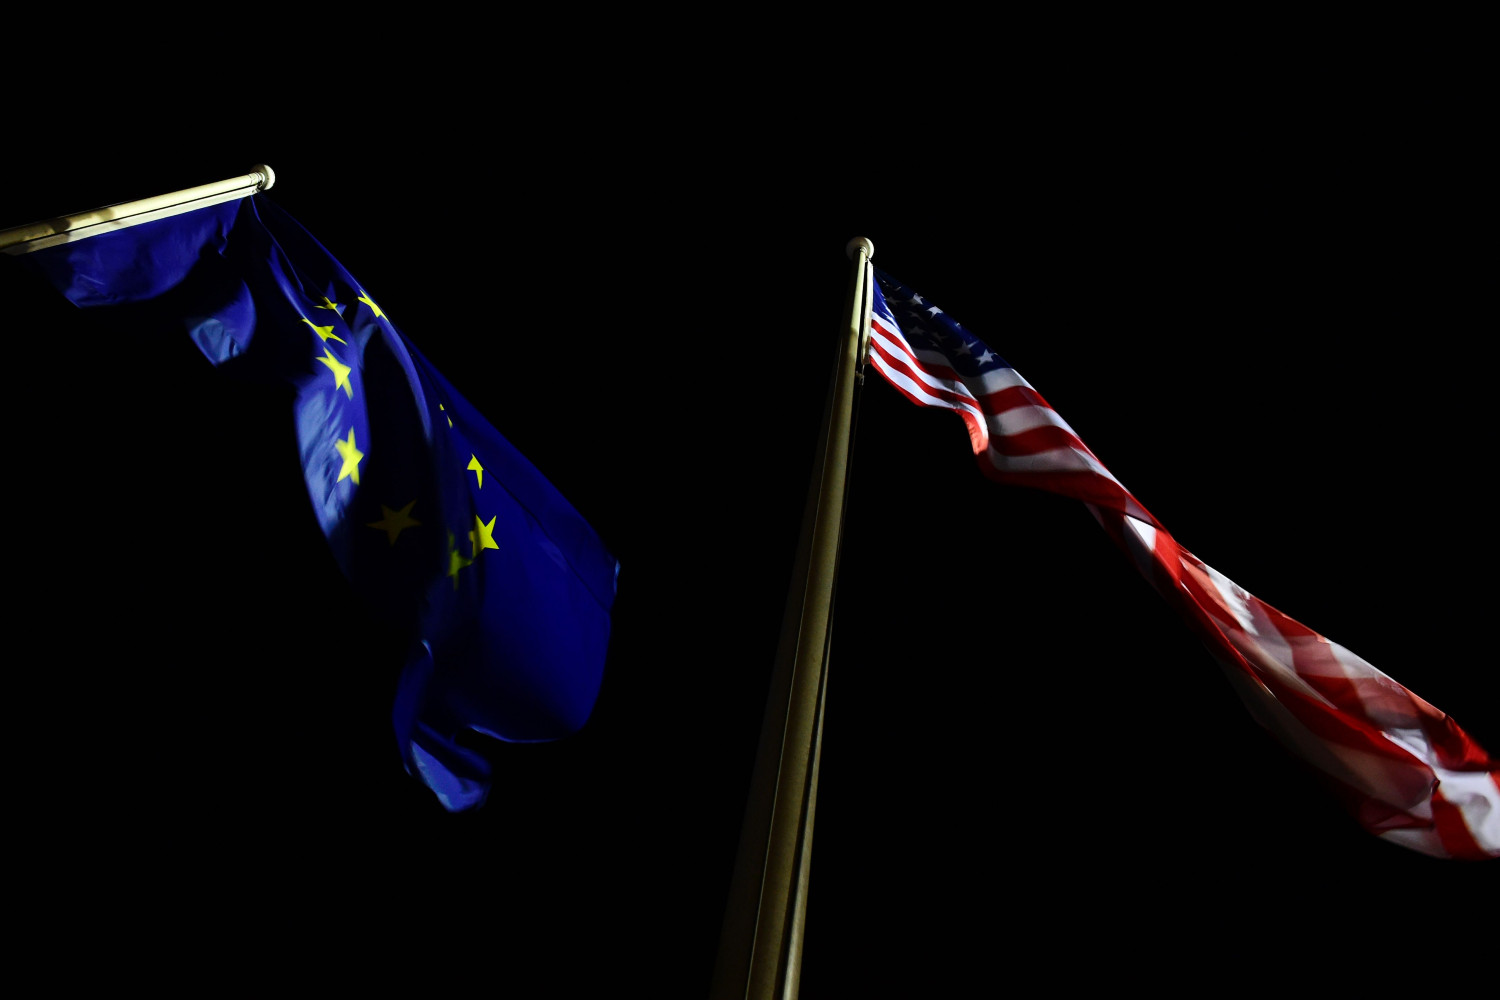 Zastave Evropske unije i Sjedinjenih Država se vijore noću (Foto: Tobias Schwarz/AFP via Getty Images)